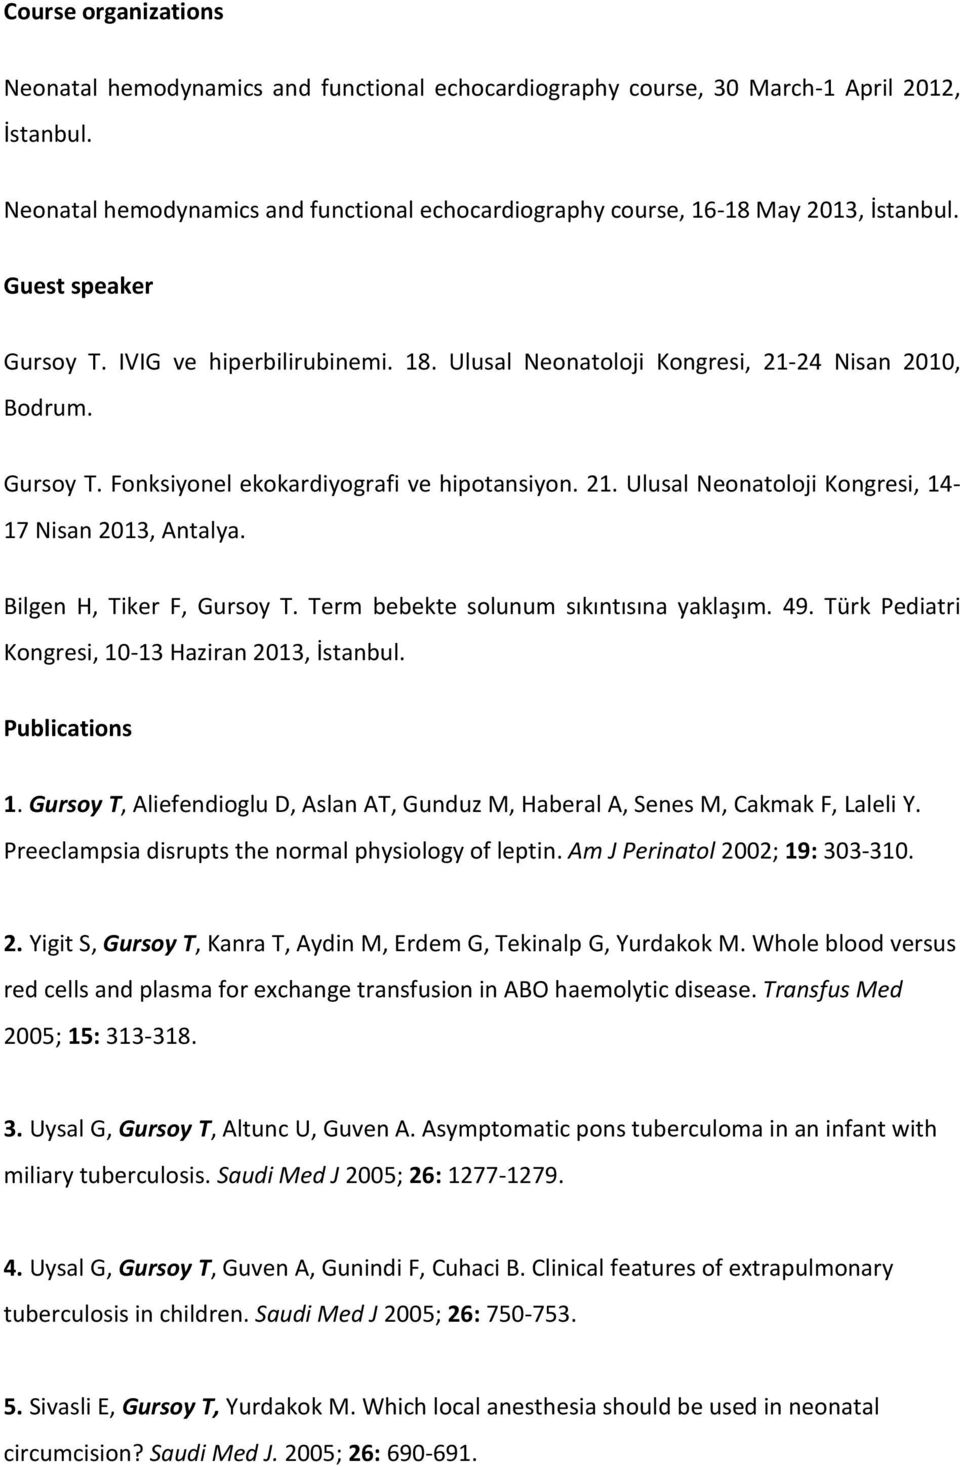 Gursoy T. Fonksiyonel ekokardiyografi ve hipotansiyon. 21. Ulusal Neonatoloji Kongresi, 14-17 Nisan 2013, Antalya. Bilgen H, Tiker F, Gursoy T. Term bebekte solunum sıkıntısına yaklaşım. 49.